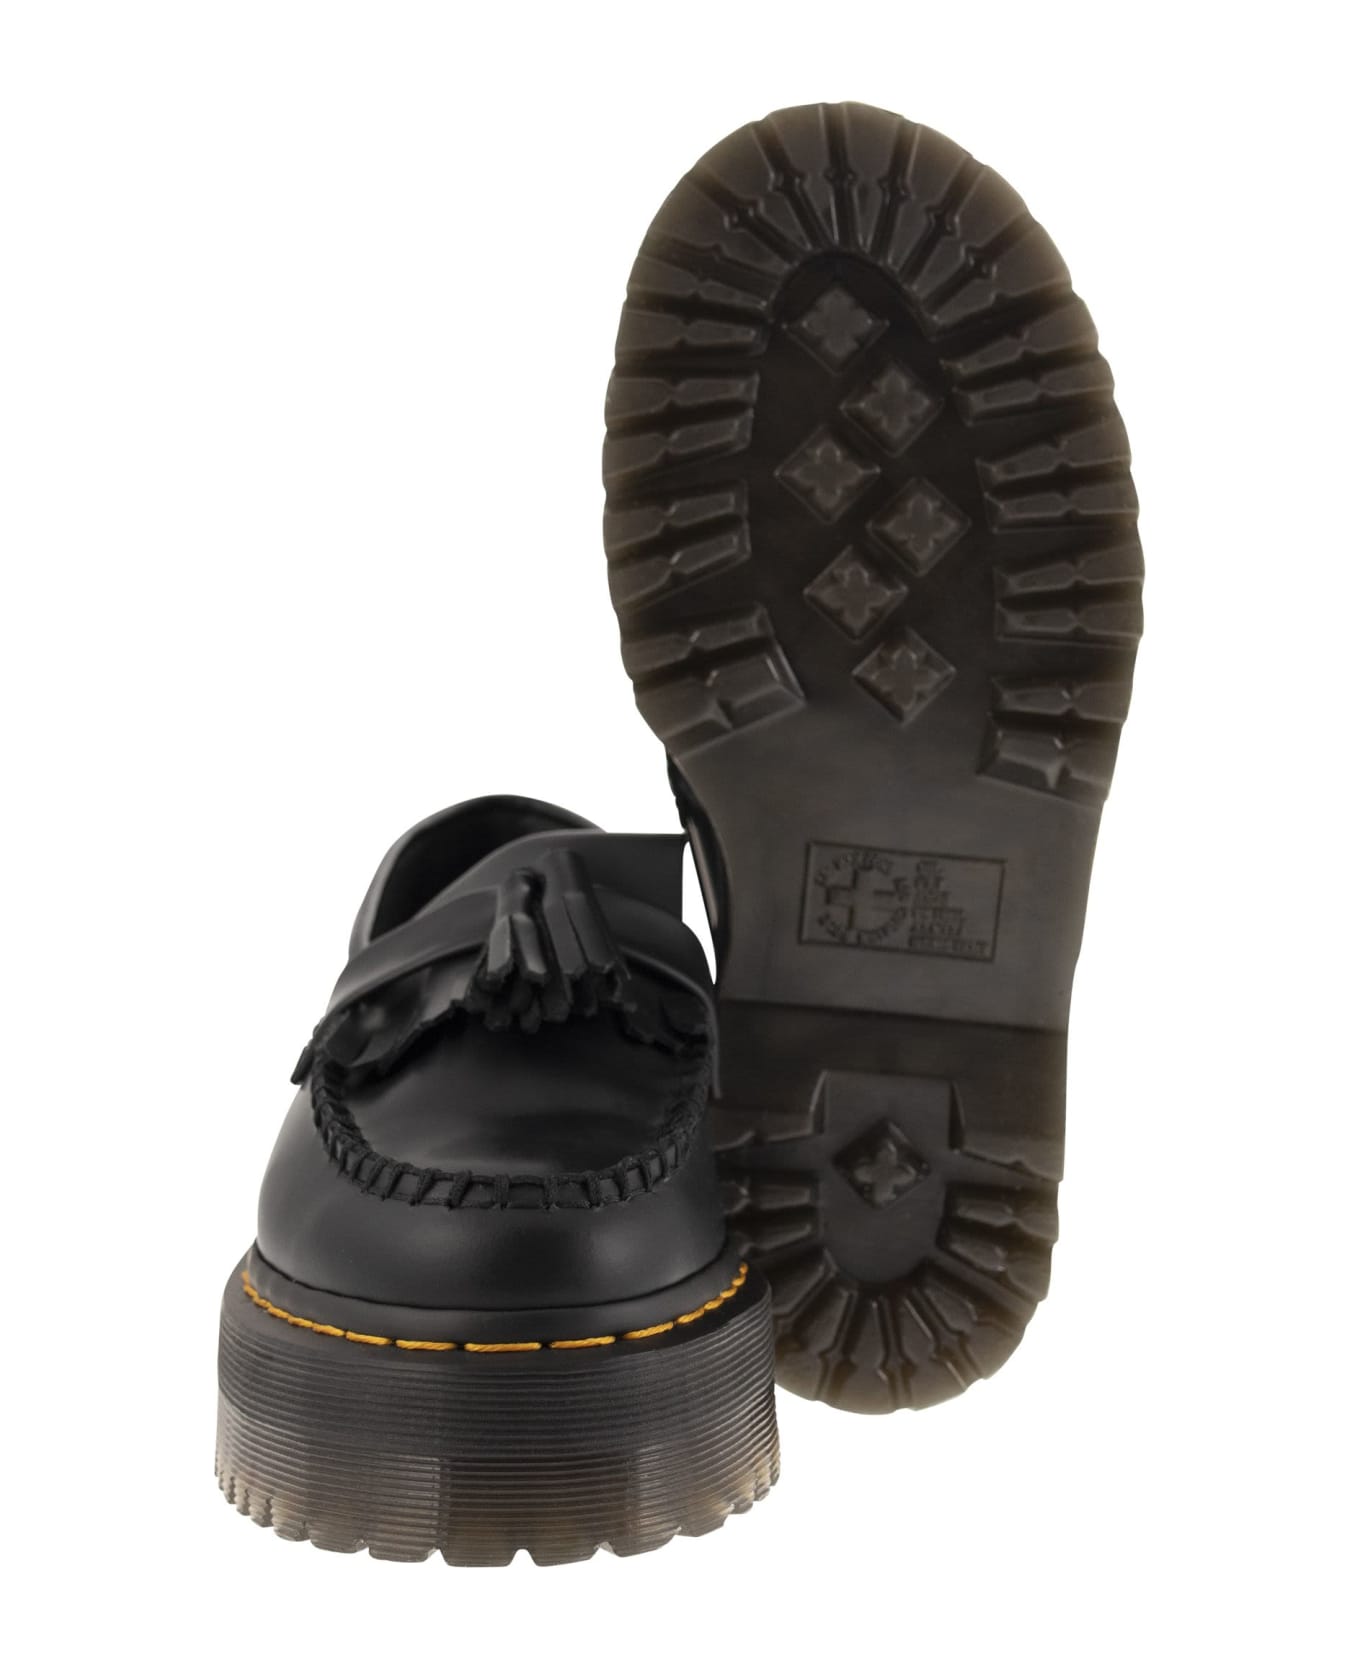 Dr. Martens Adrian Quad Leather Platform Tassle Loafers - Black